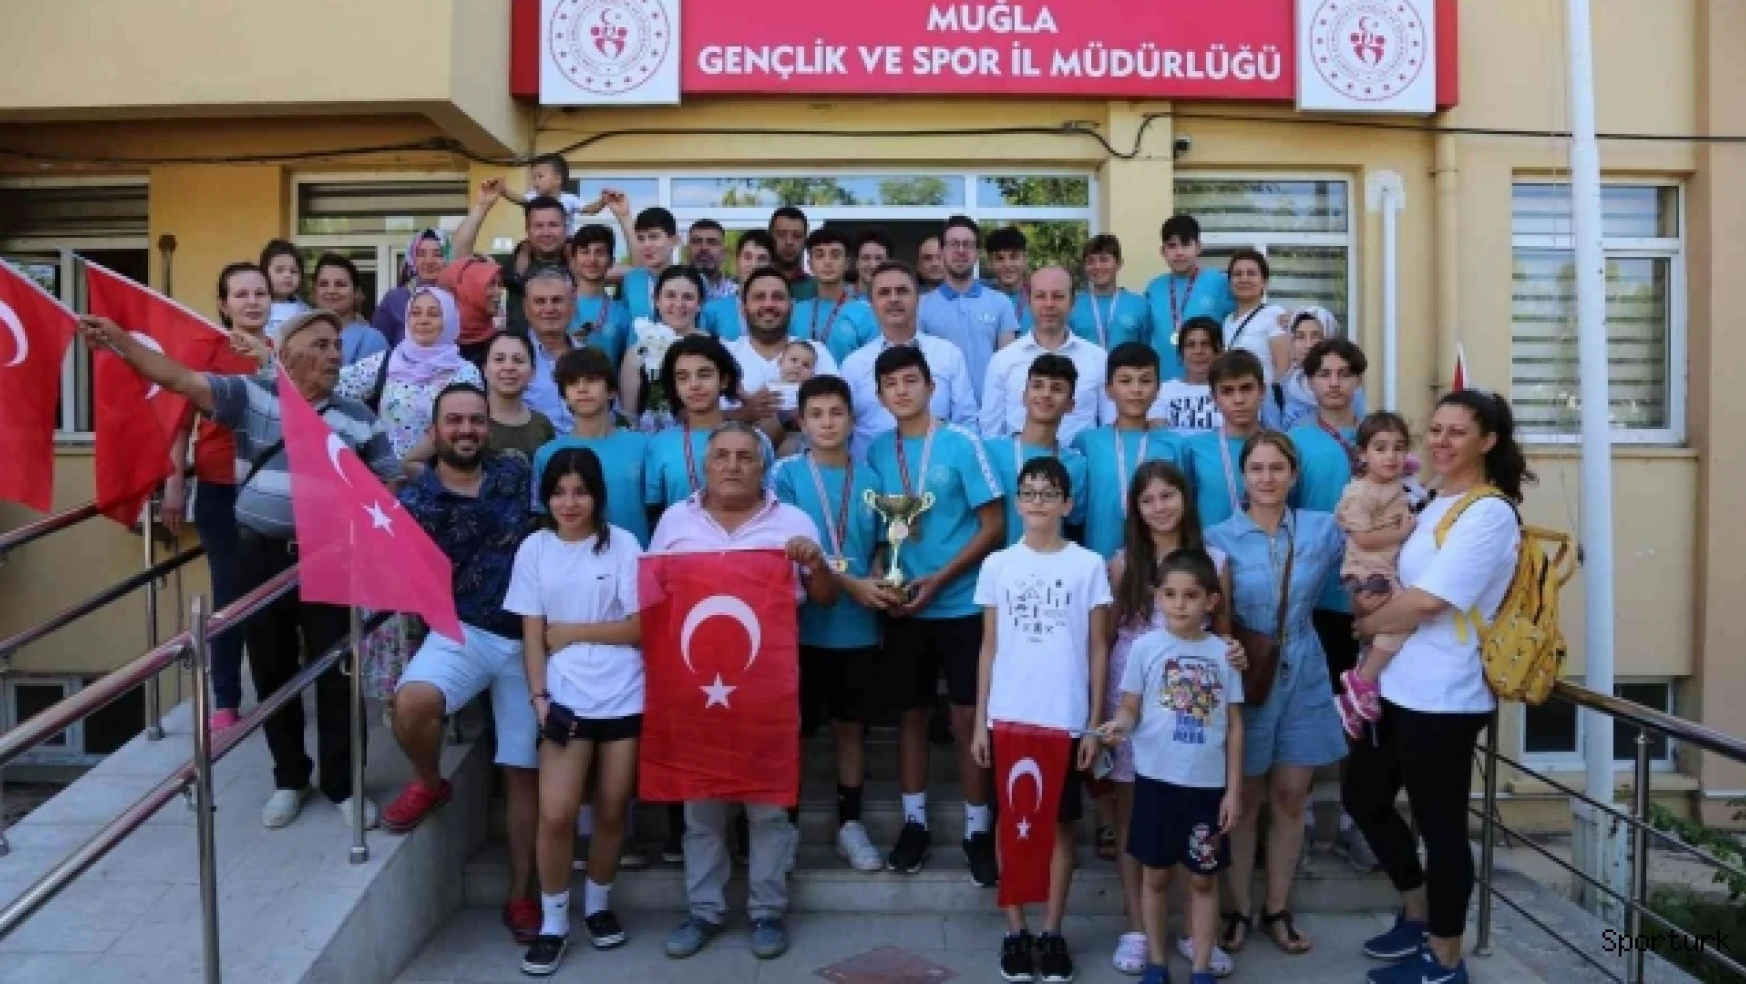 Muğla'nın şampiyon takımı Türk bayraklarıyla karşılandı